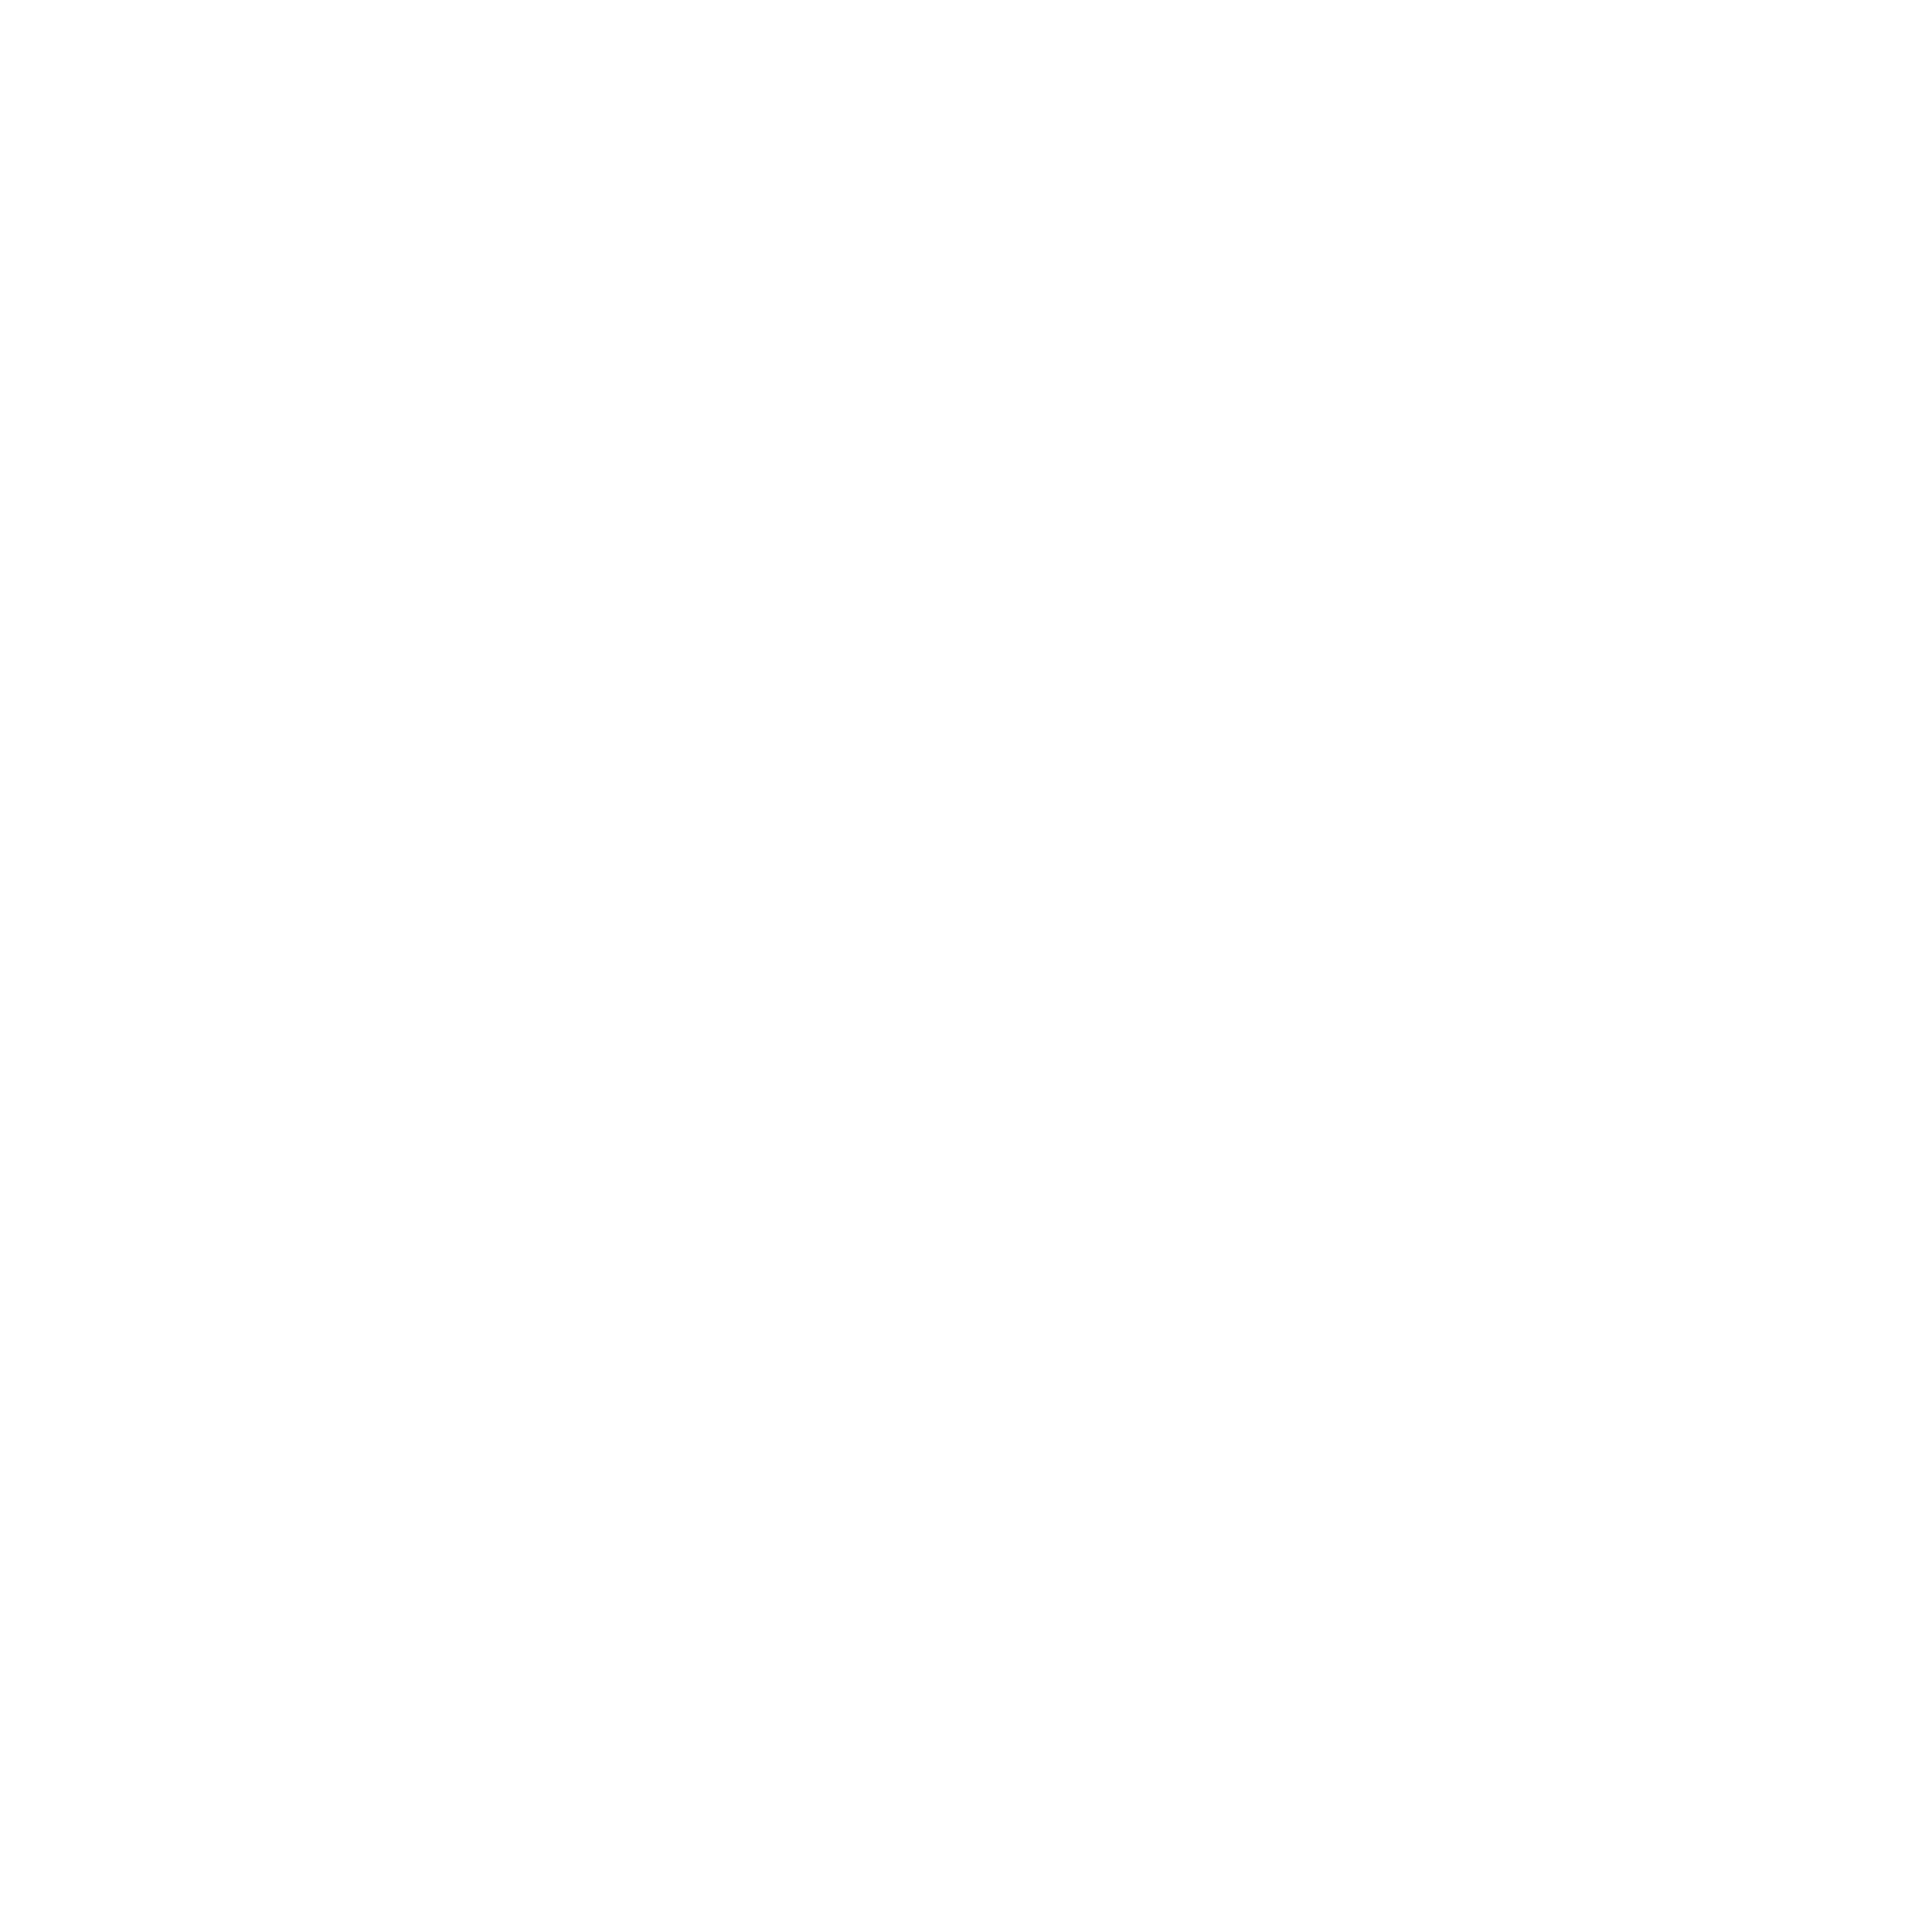 <strong>24/7 Notfallhotline  + ACL Mobilitätservice </strong><br>Wir sind immer für dich da! Dank unserer 24/7 Notfallhotline und unserem 24h Mobilitätsservice bist du immer sorgenfrei und ruhigem Gewissens unterwegs.
